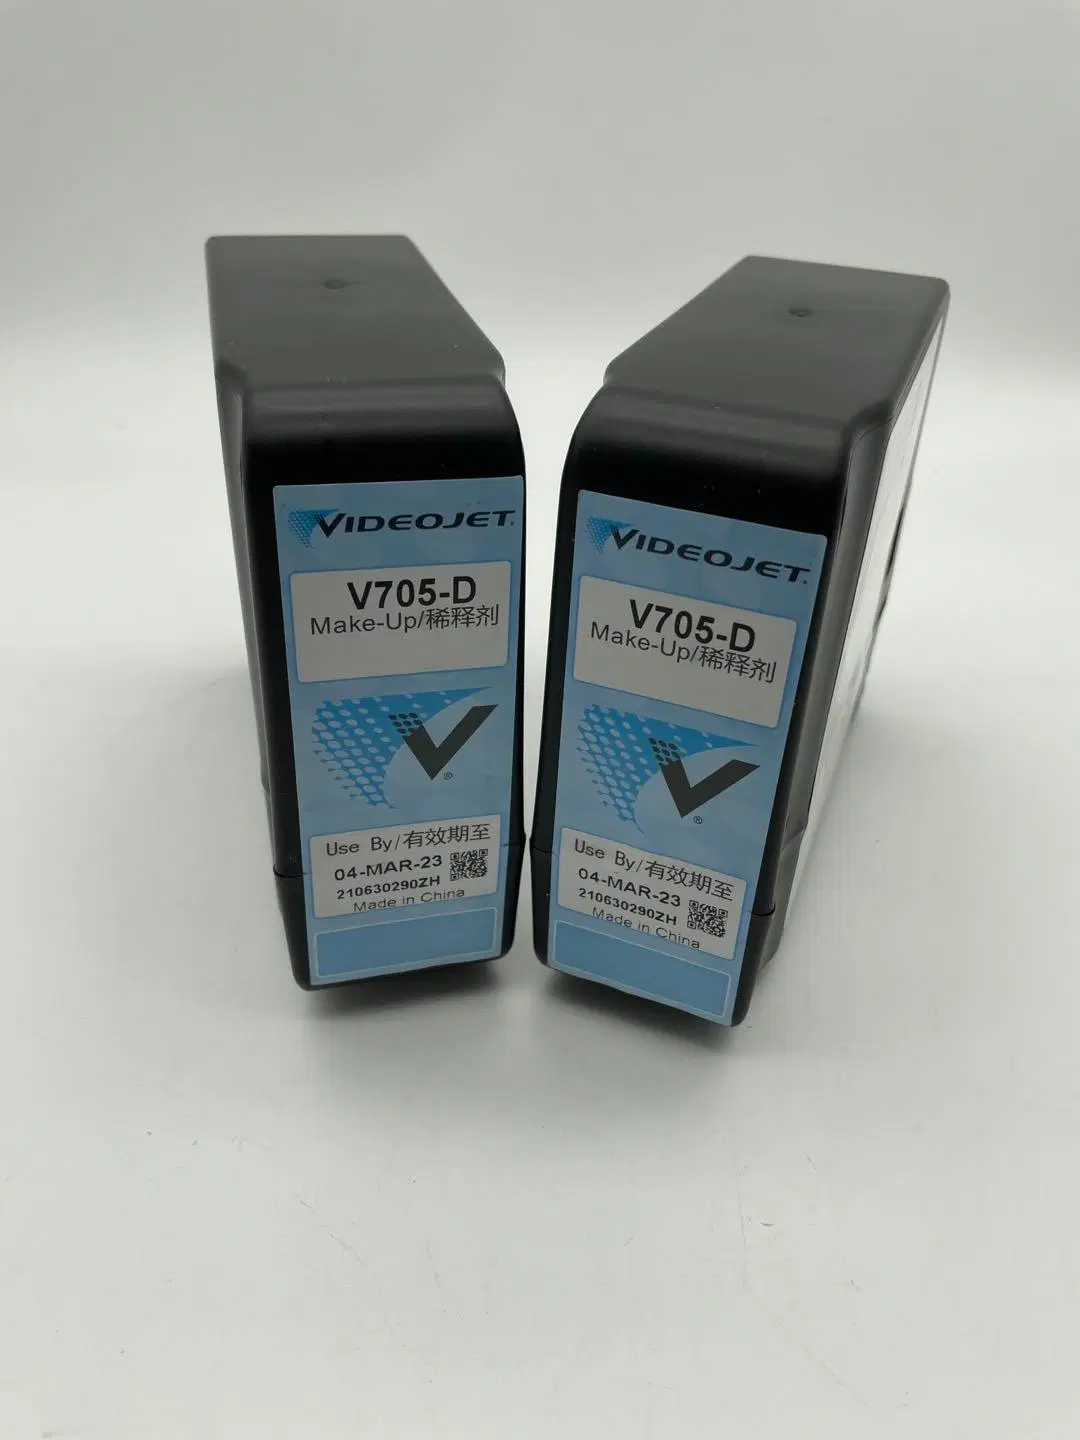 Original V705-D Make up for Videojet Cij Inkjet Printer

Encre de maquillage d'origine V705-D pour imprimante à jet d'encre Videojet Cij